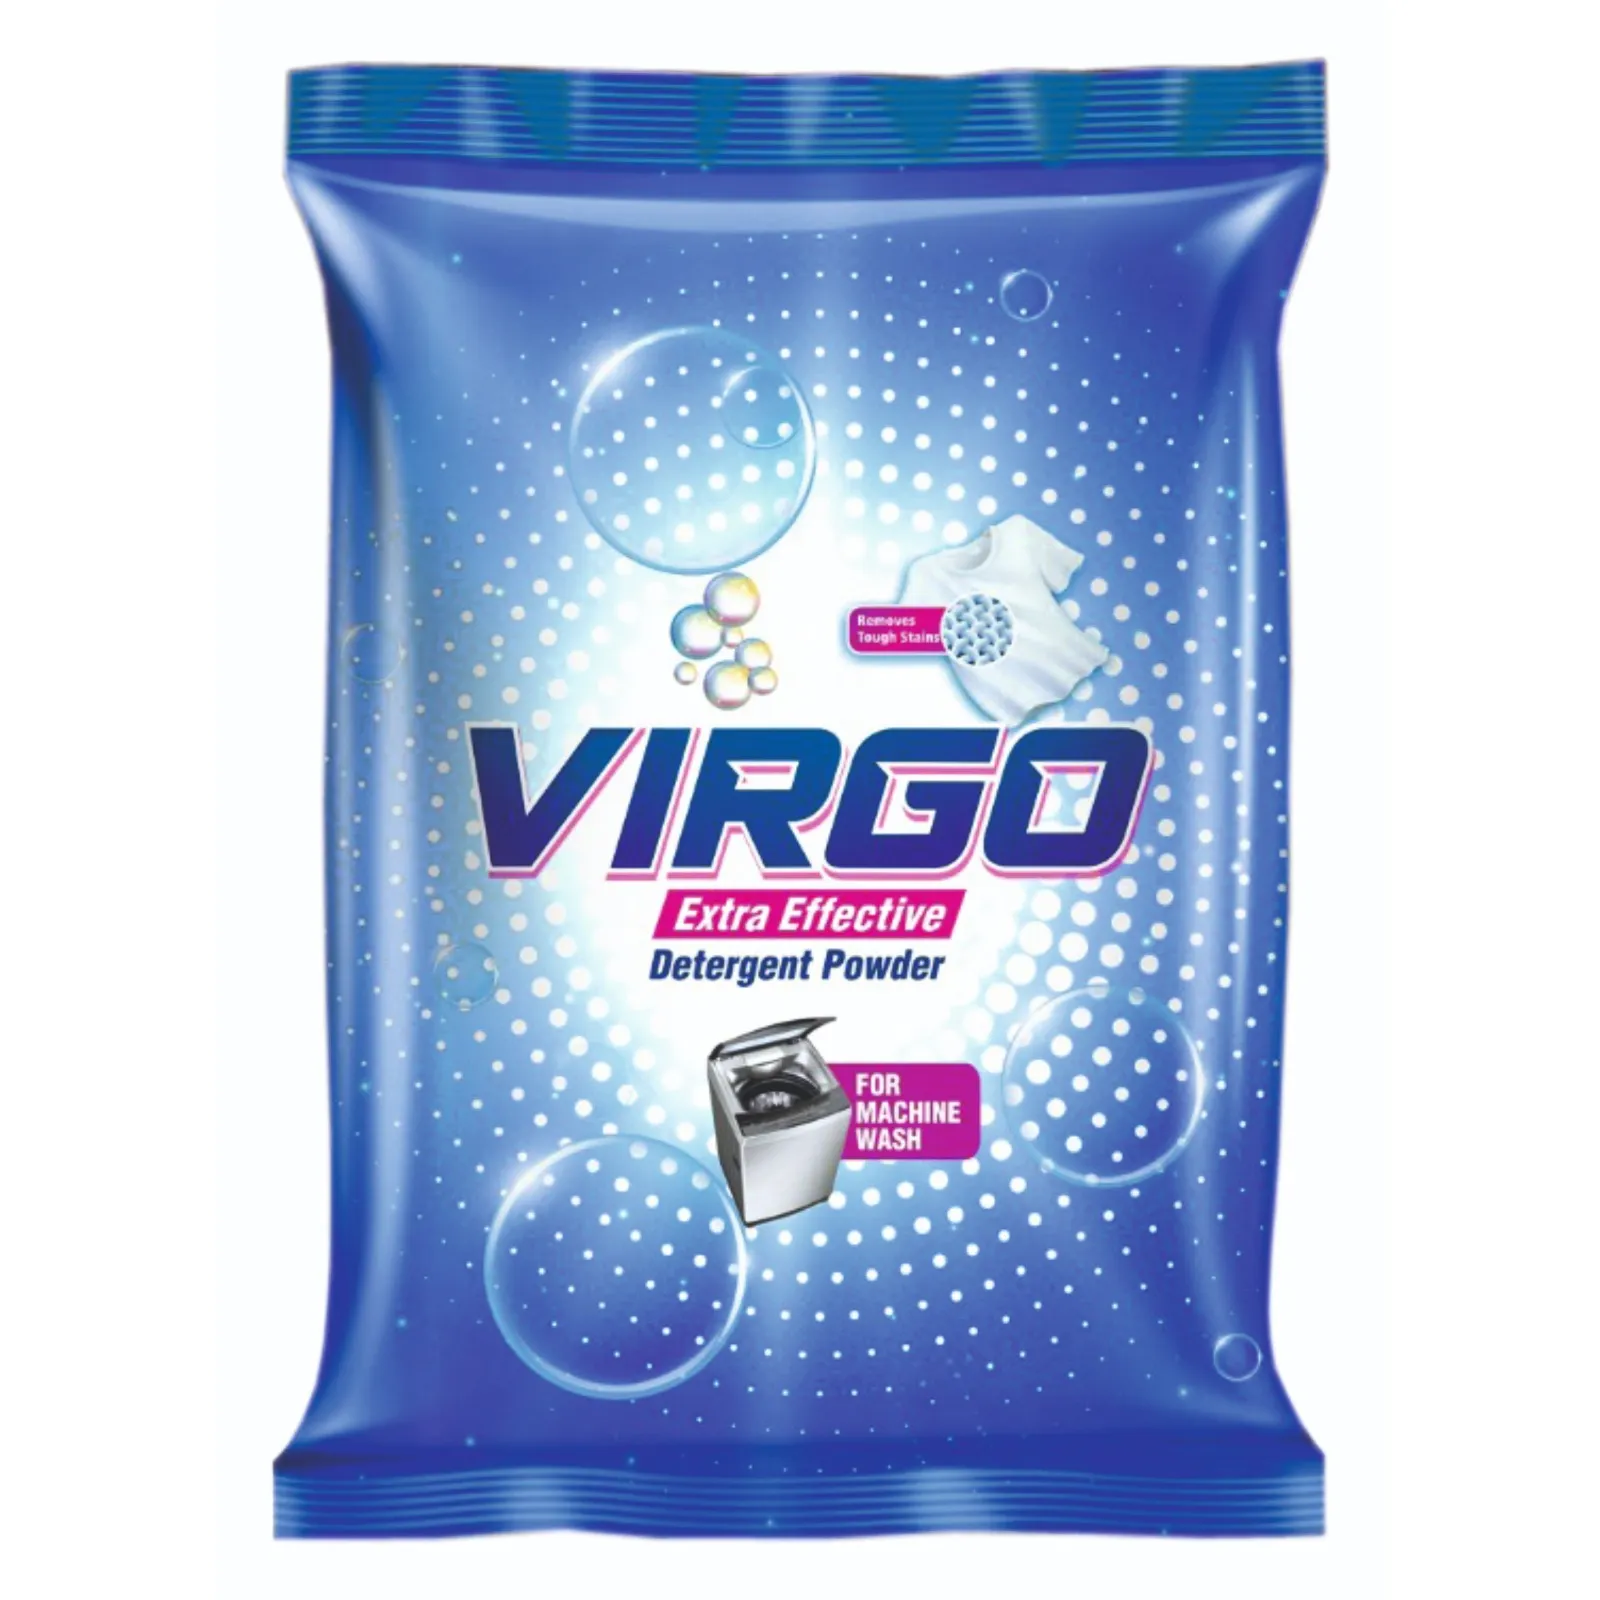 Chất lượng đảm bảo Virgo chất tẩy rửa bột với thêm sức mạnh làm sạch sâu chất tẩy rửa bột cho giặt sử dụng